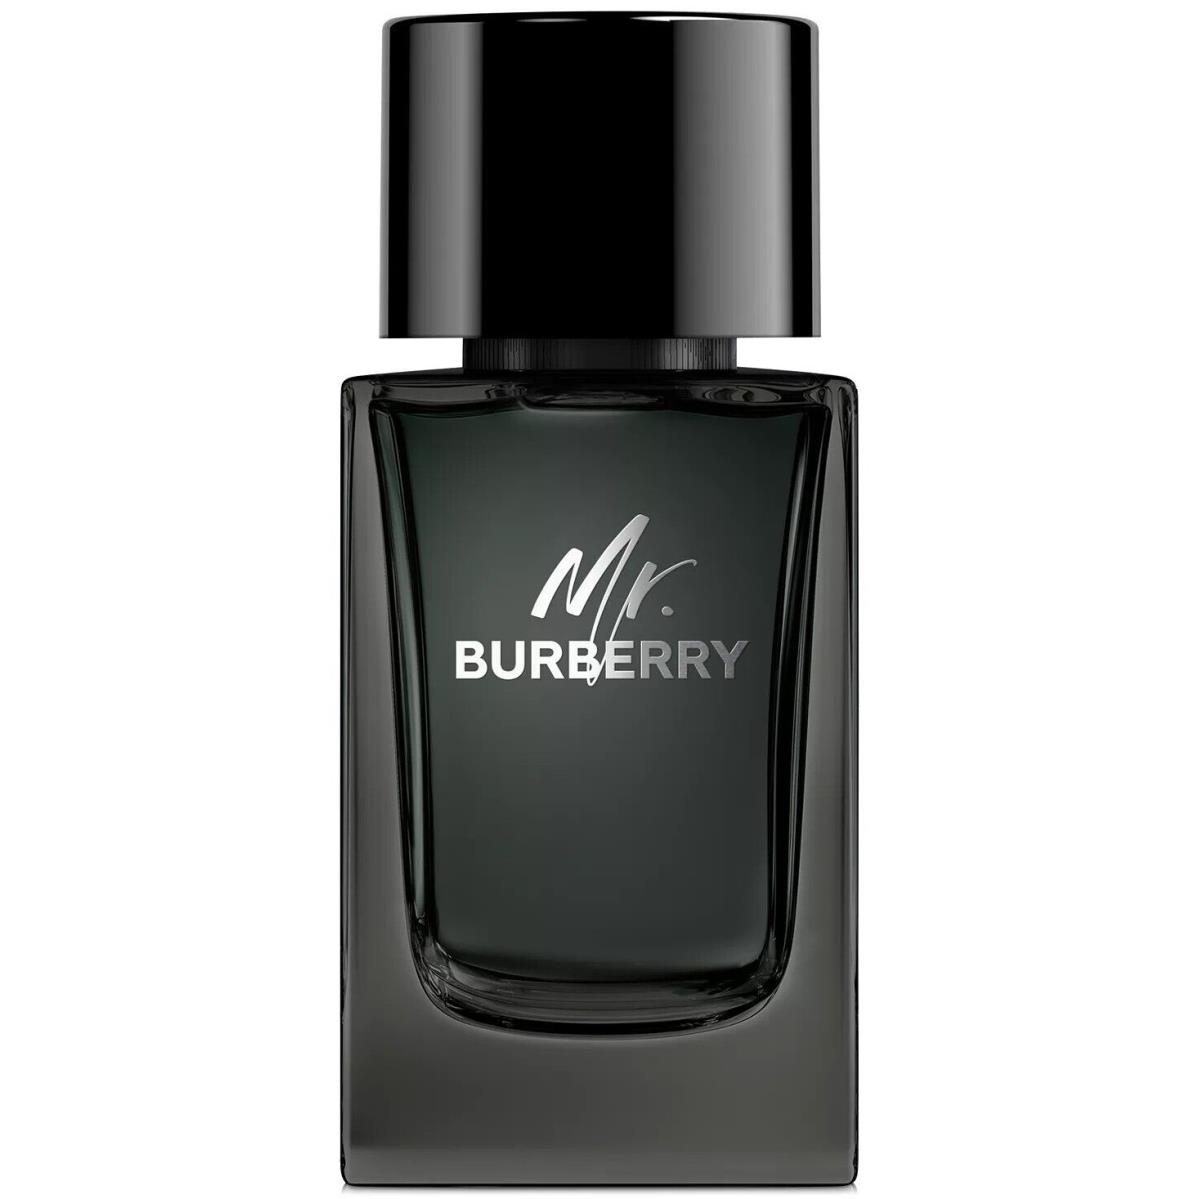 Burberry Mr. Burberry Eau de Parfum For Men 3.3 Oz / 100ml